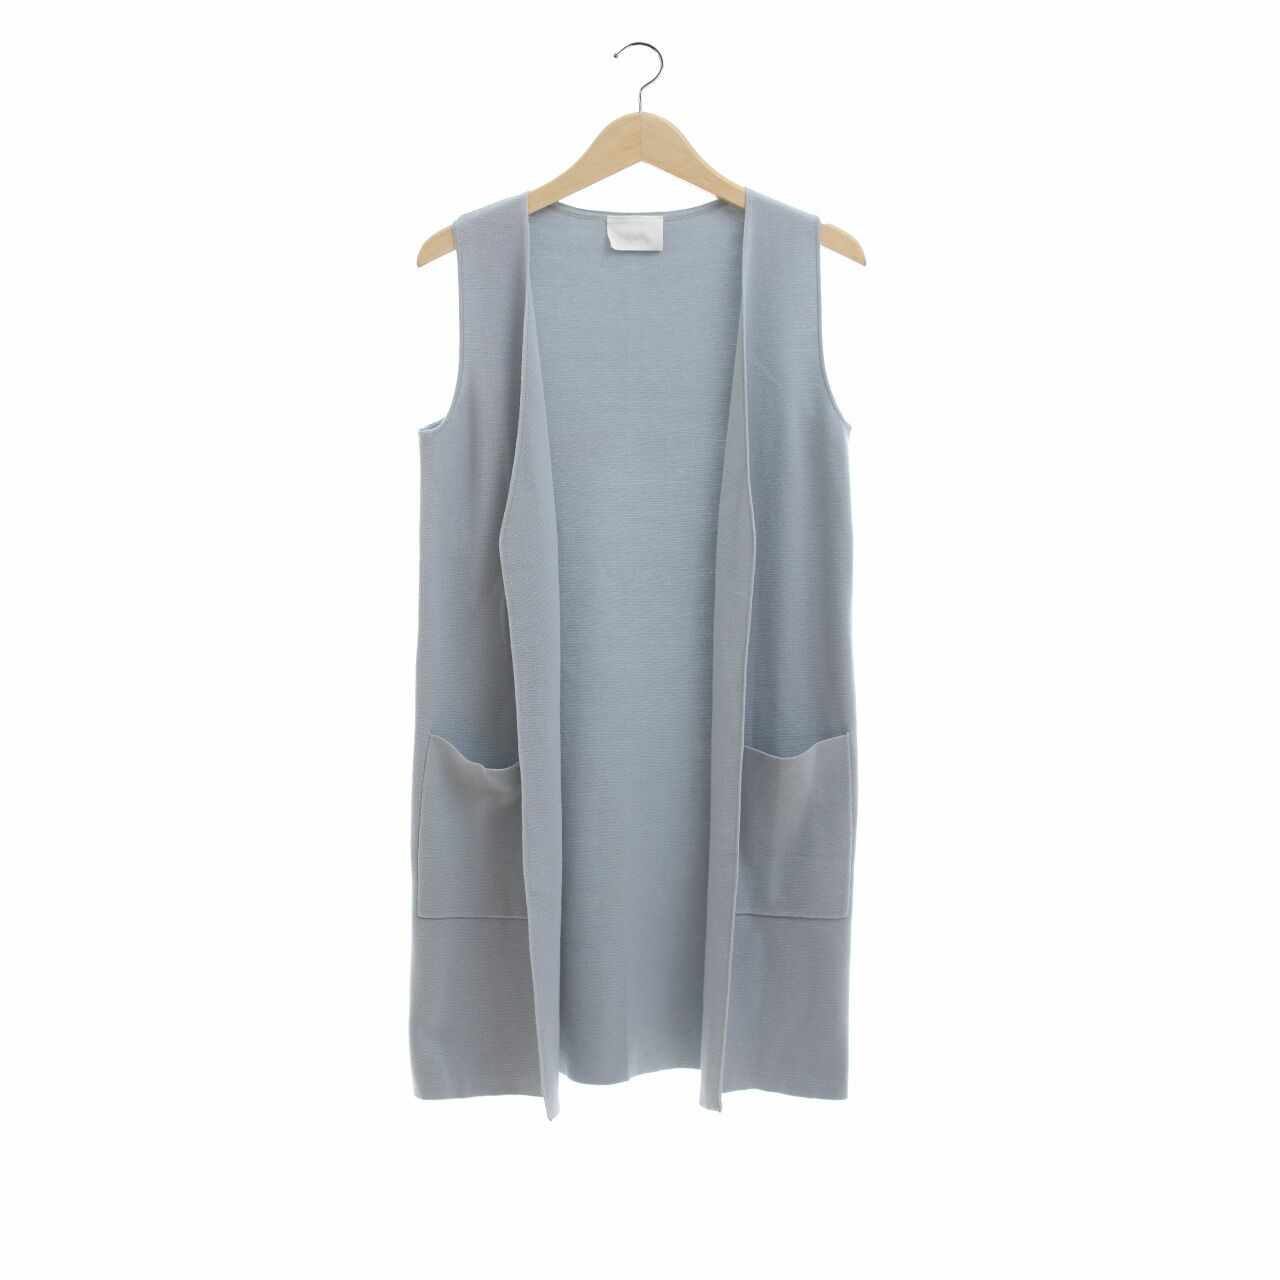 Giordano/Ladies Light Grey Vest